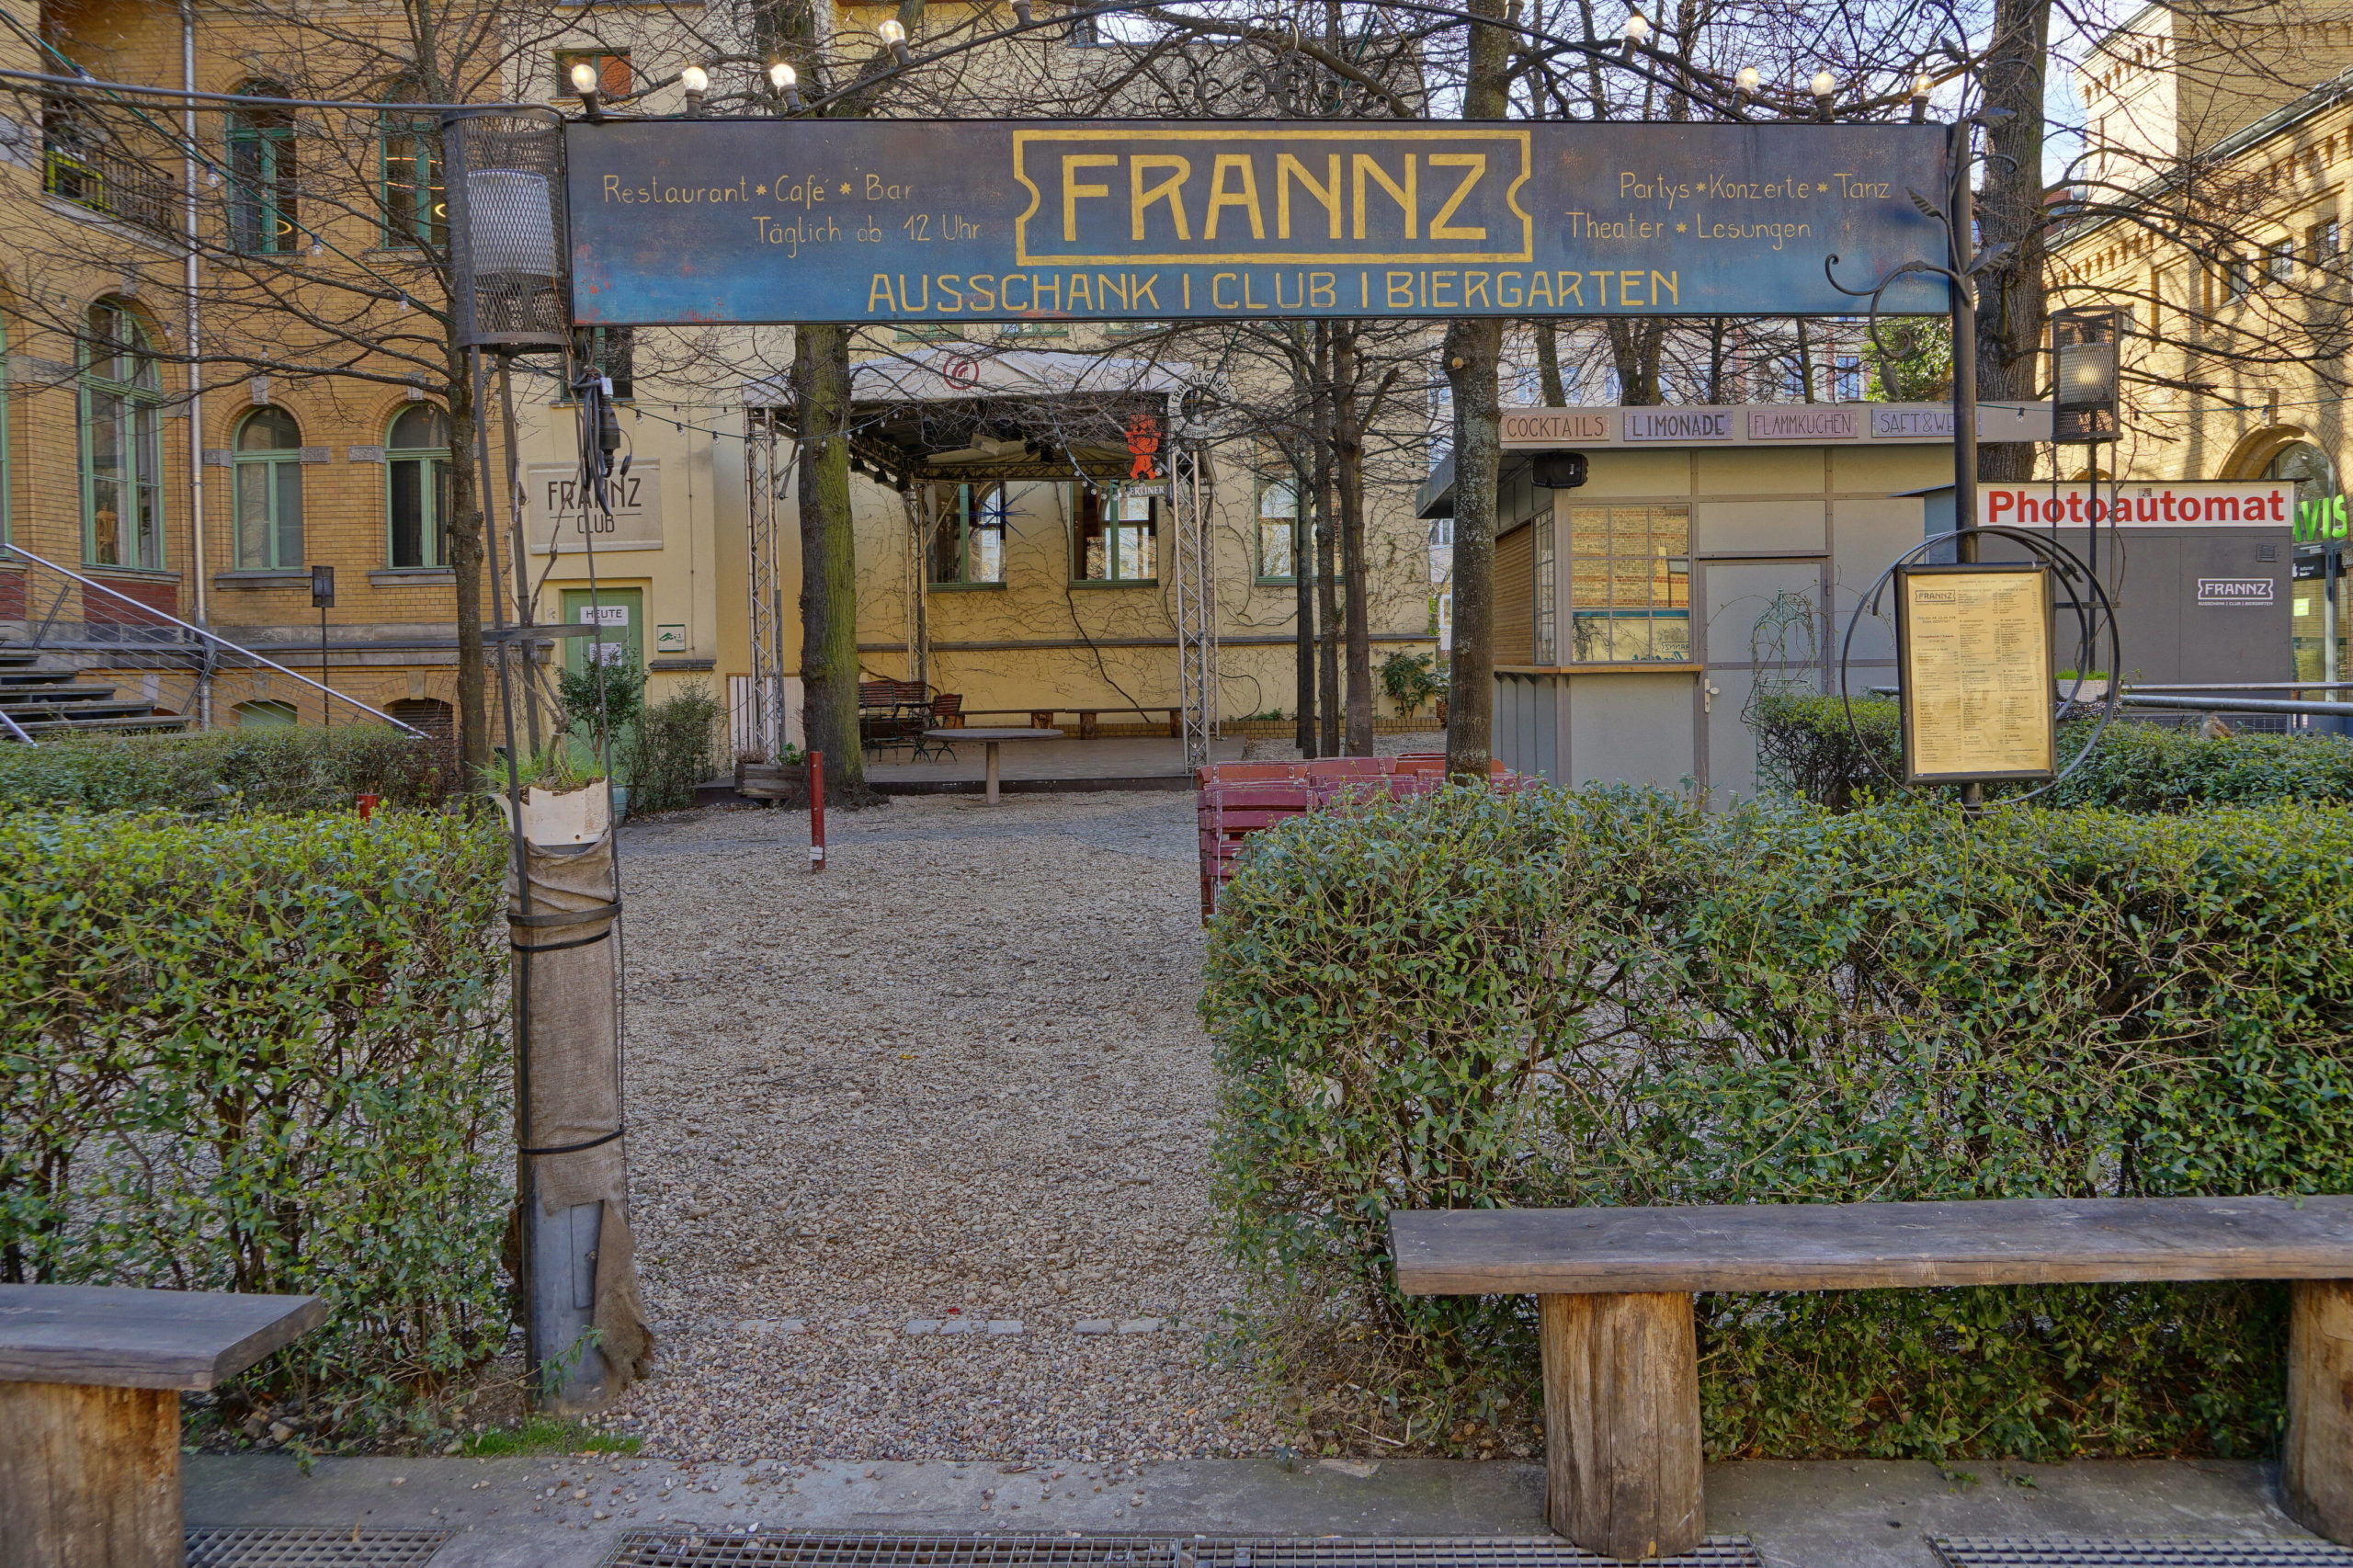 Biergärten in Berlin Zum Frannz-Club in der Kulturbrauerei gehört auch ein schöner Biergarten.